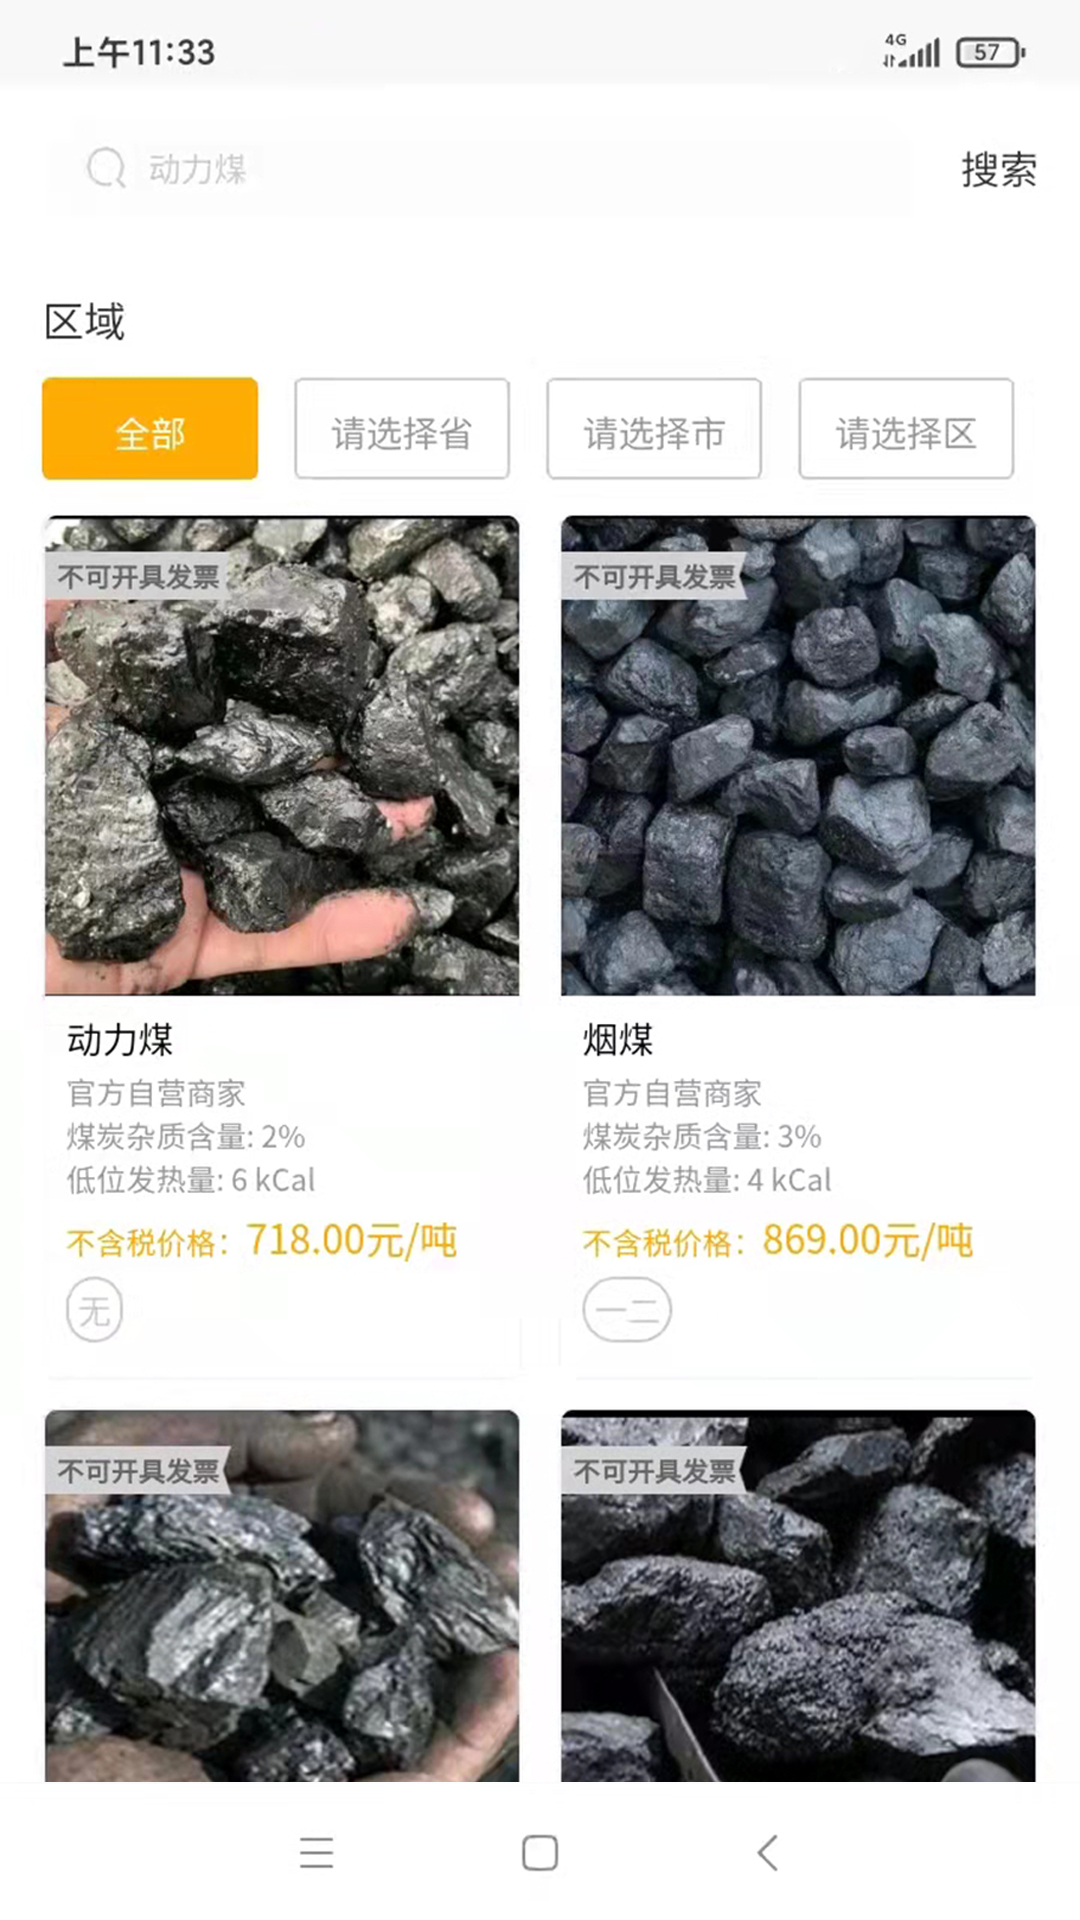 煤炭行业在线交易平台